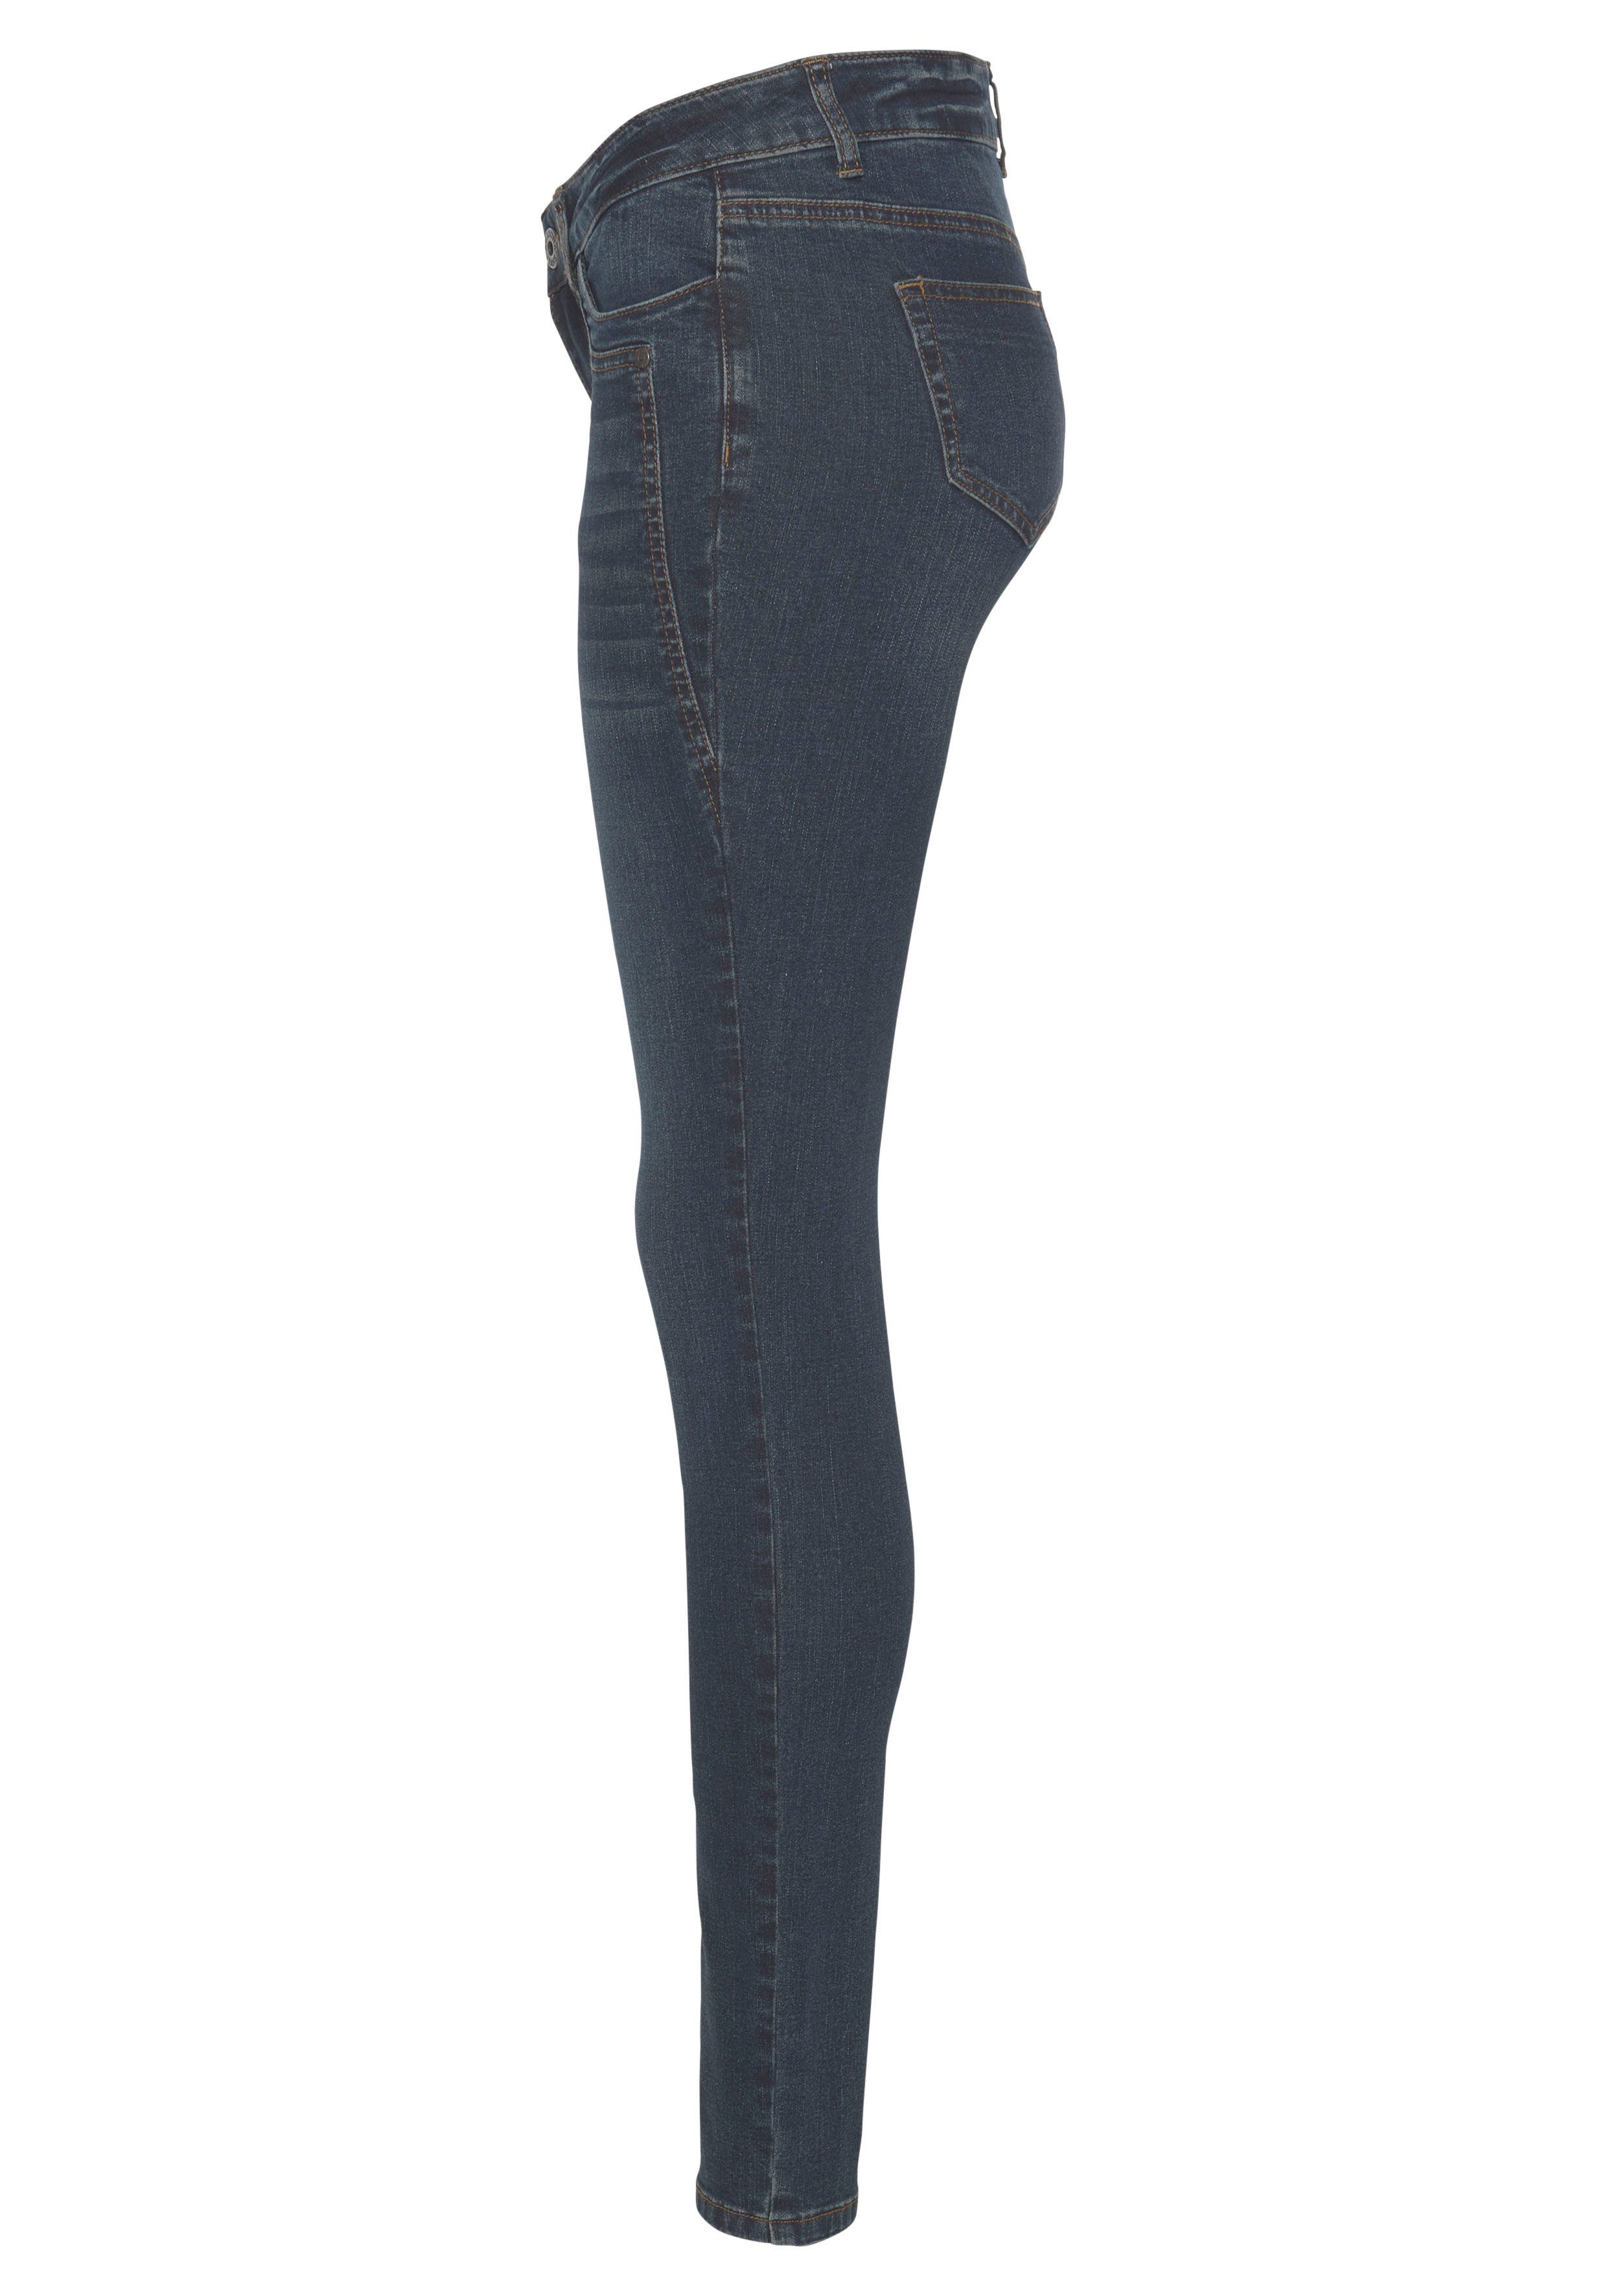 Arizona Waist Low darkblue-used Keileinsätzen mit Skinny-fit-Jeans